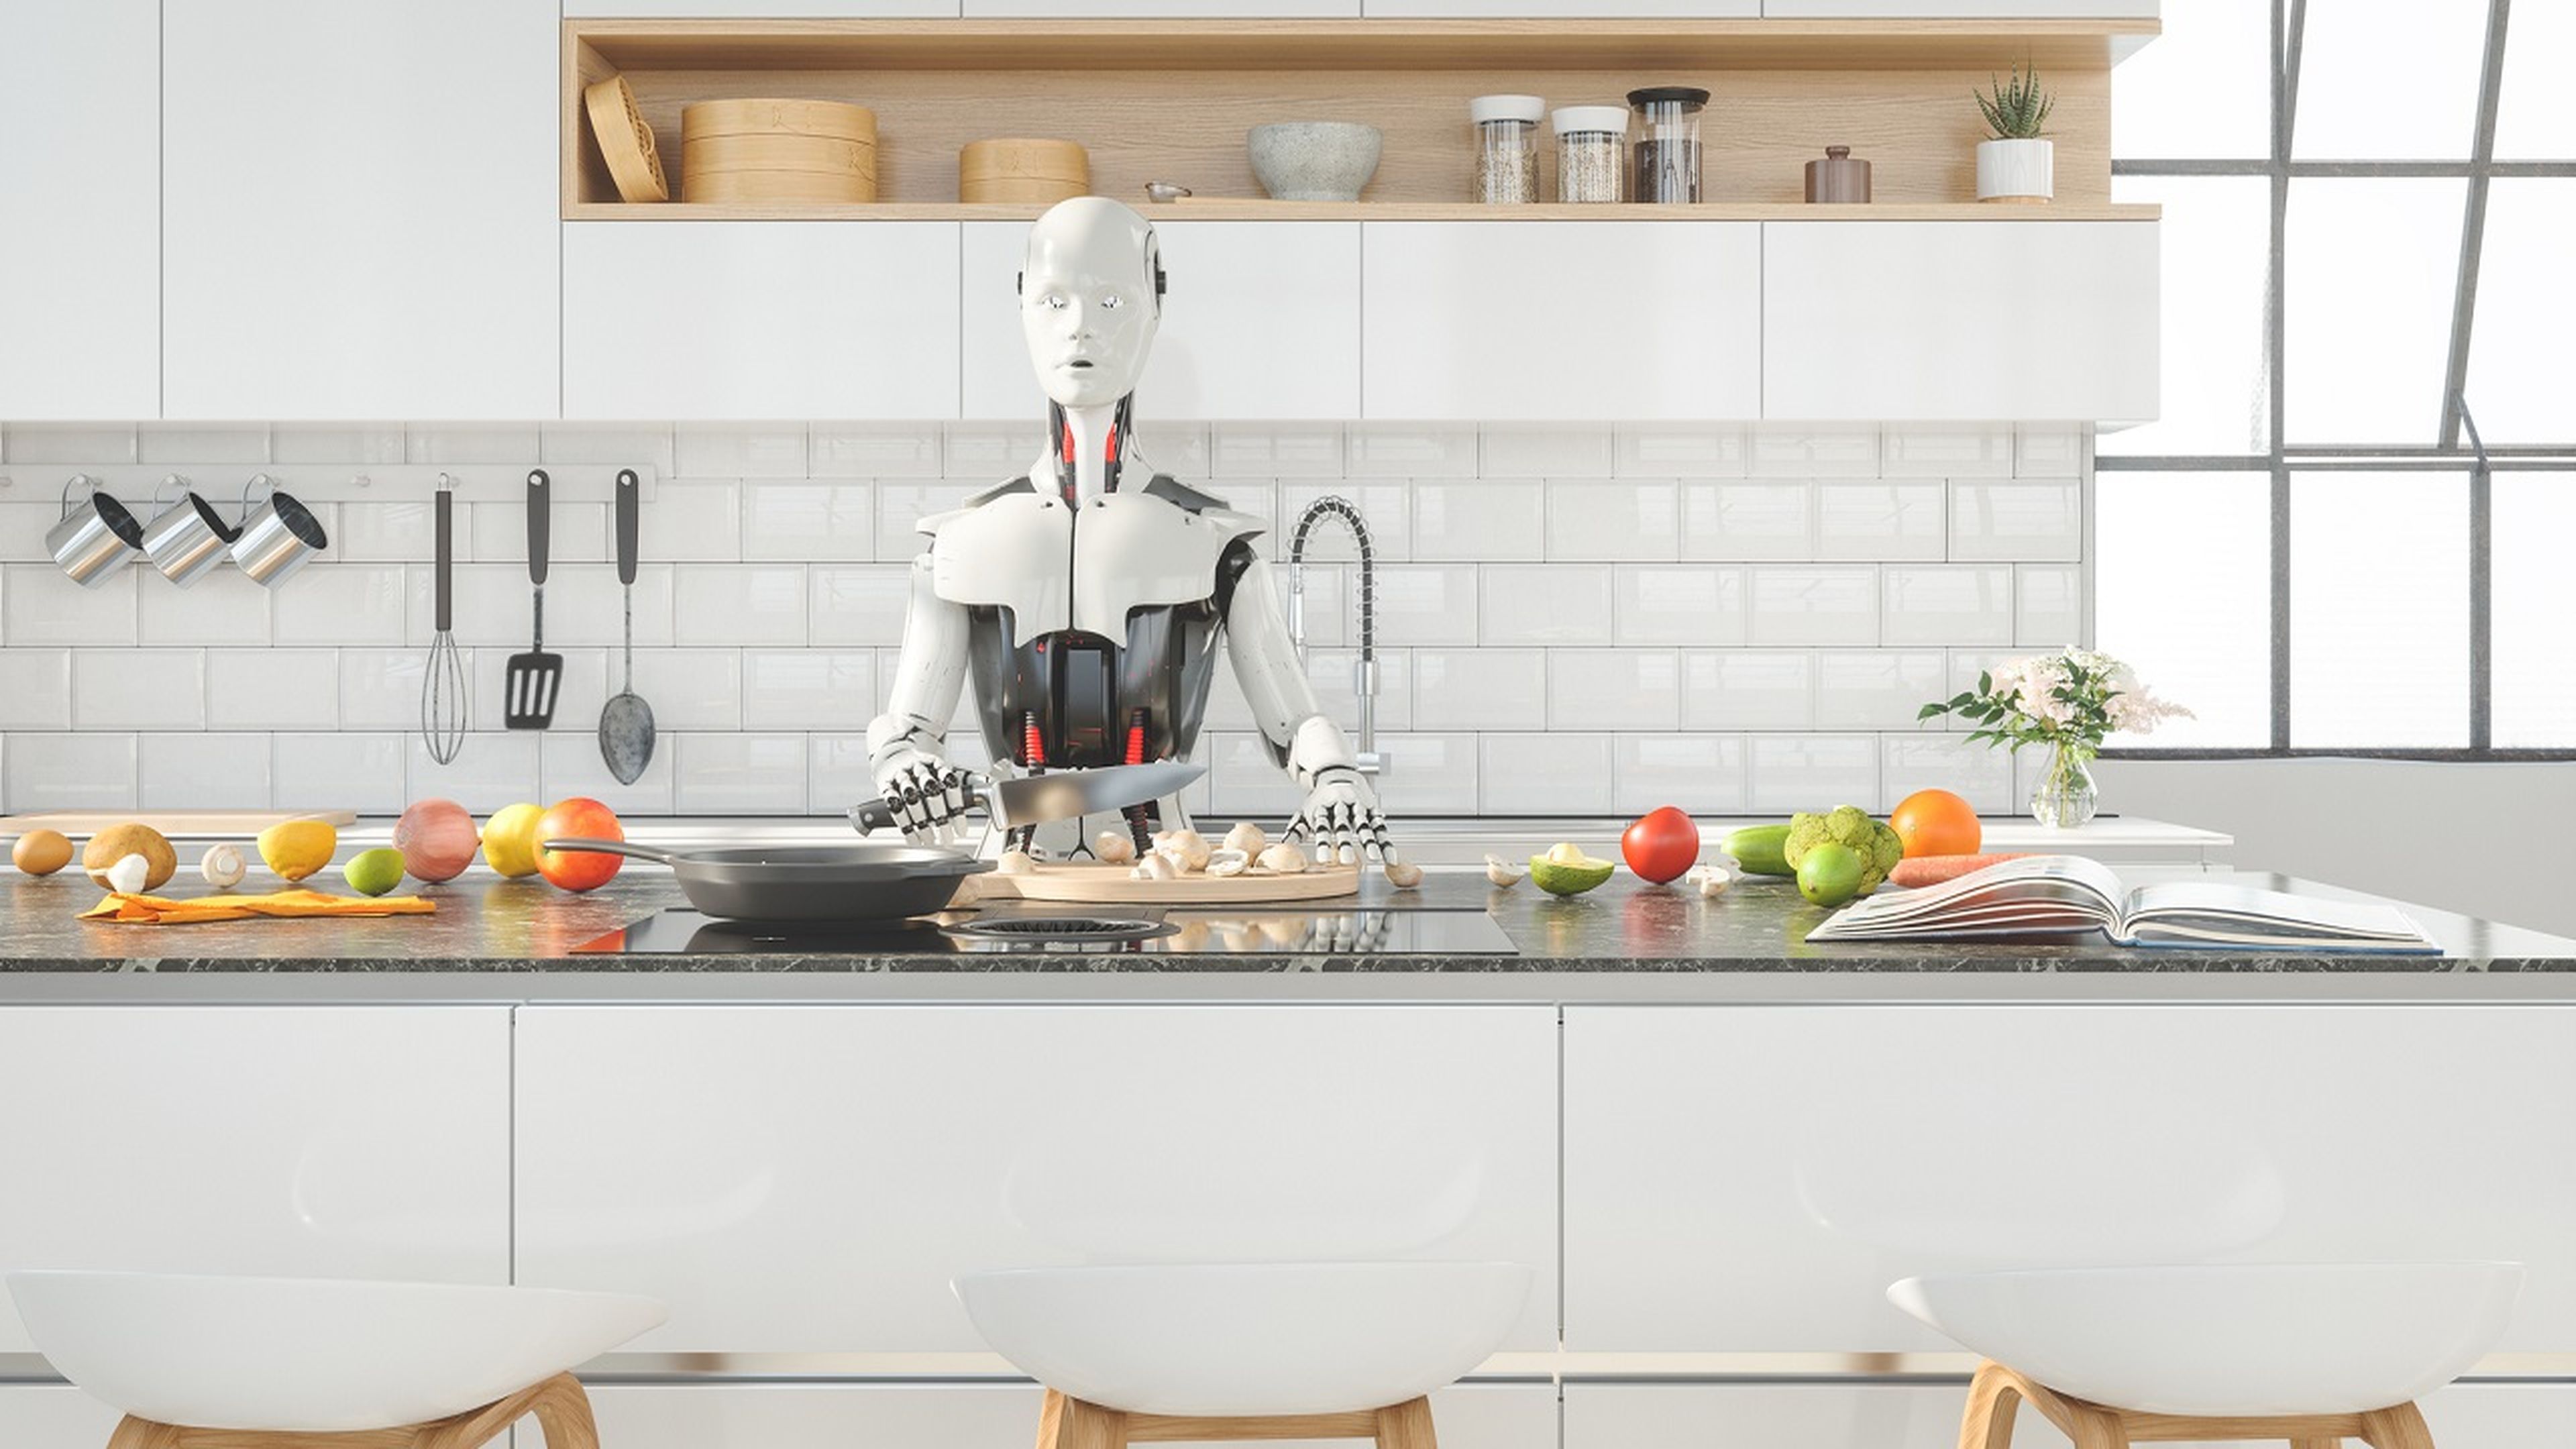 Baratos, accesibles y revolucionarios: así serán los robots humanoides según el CEO de Nvidia